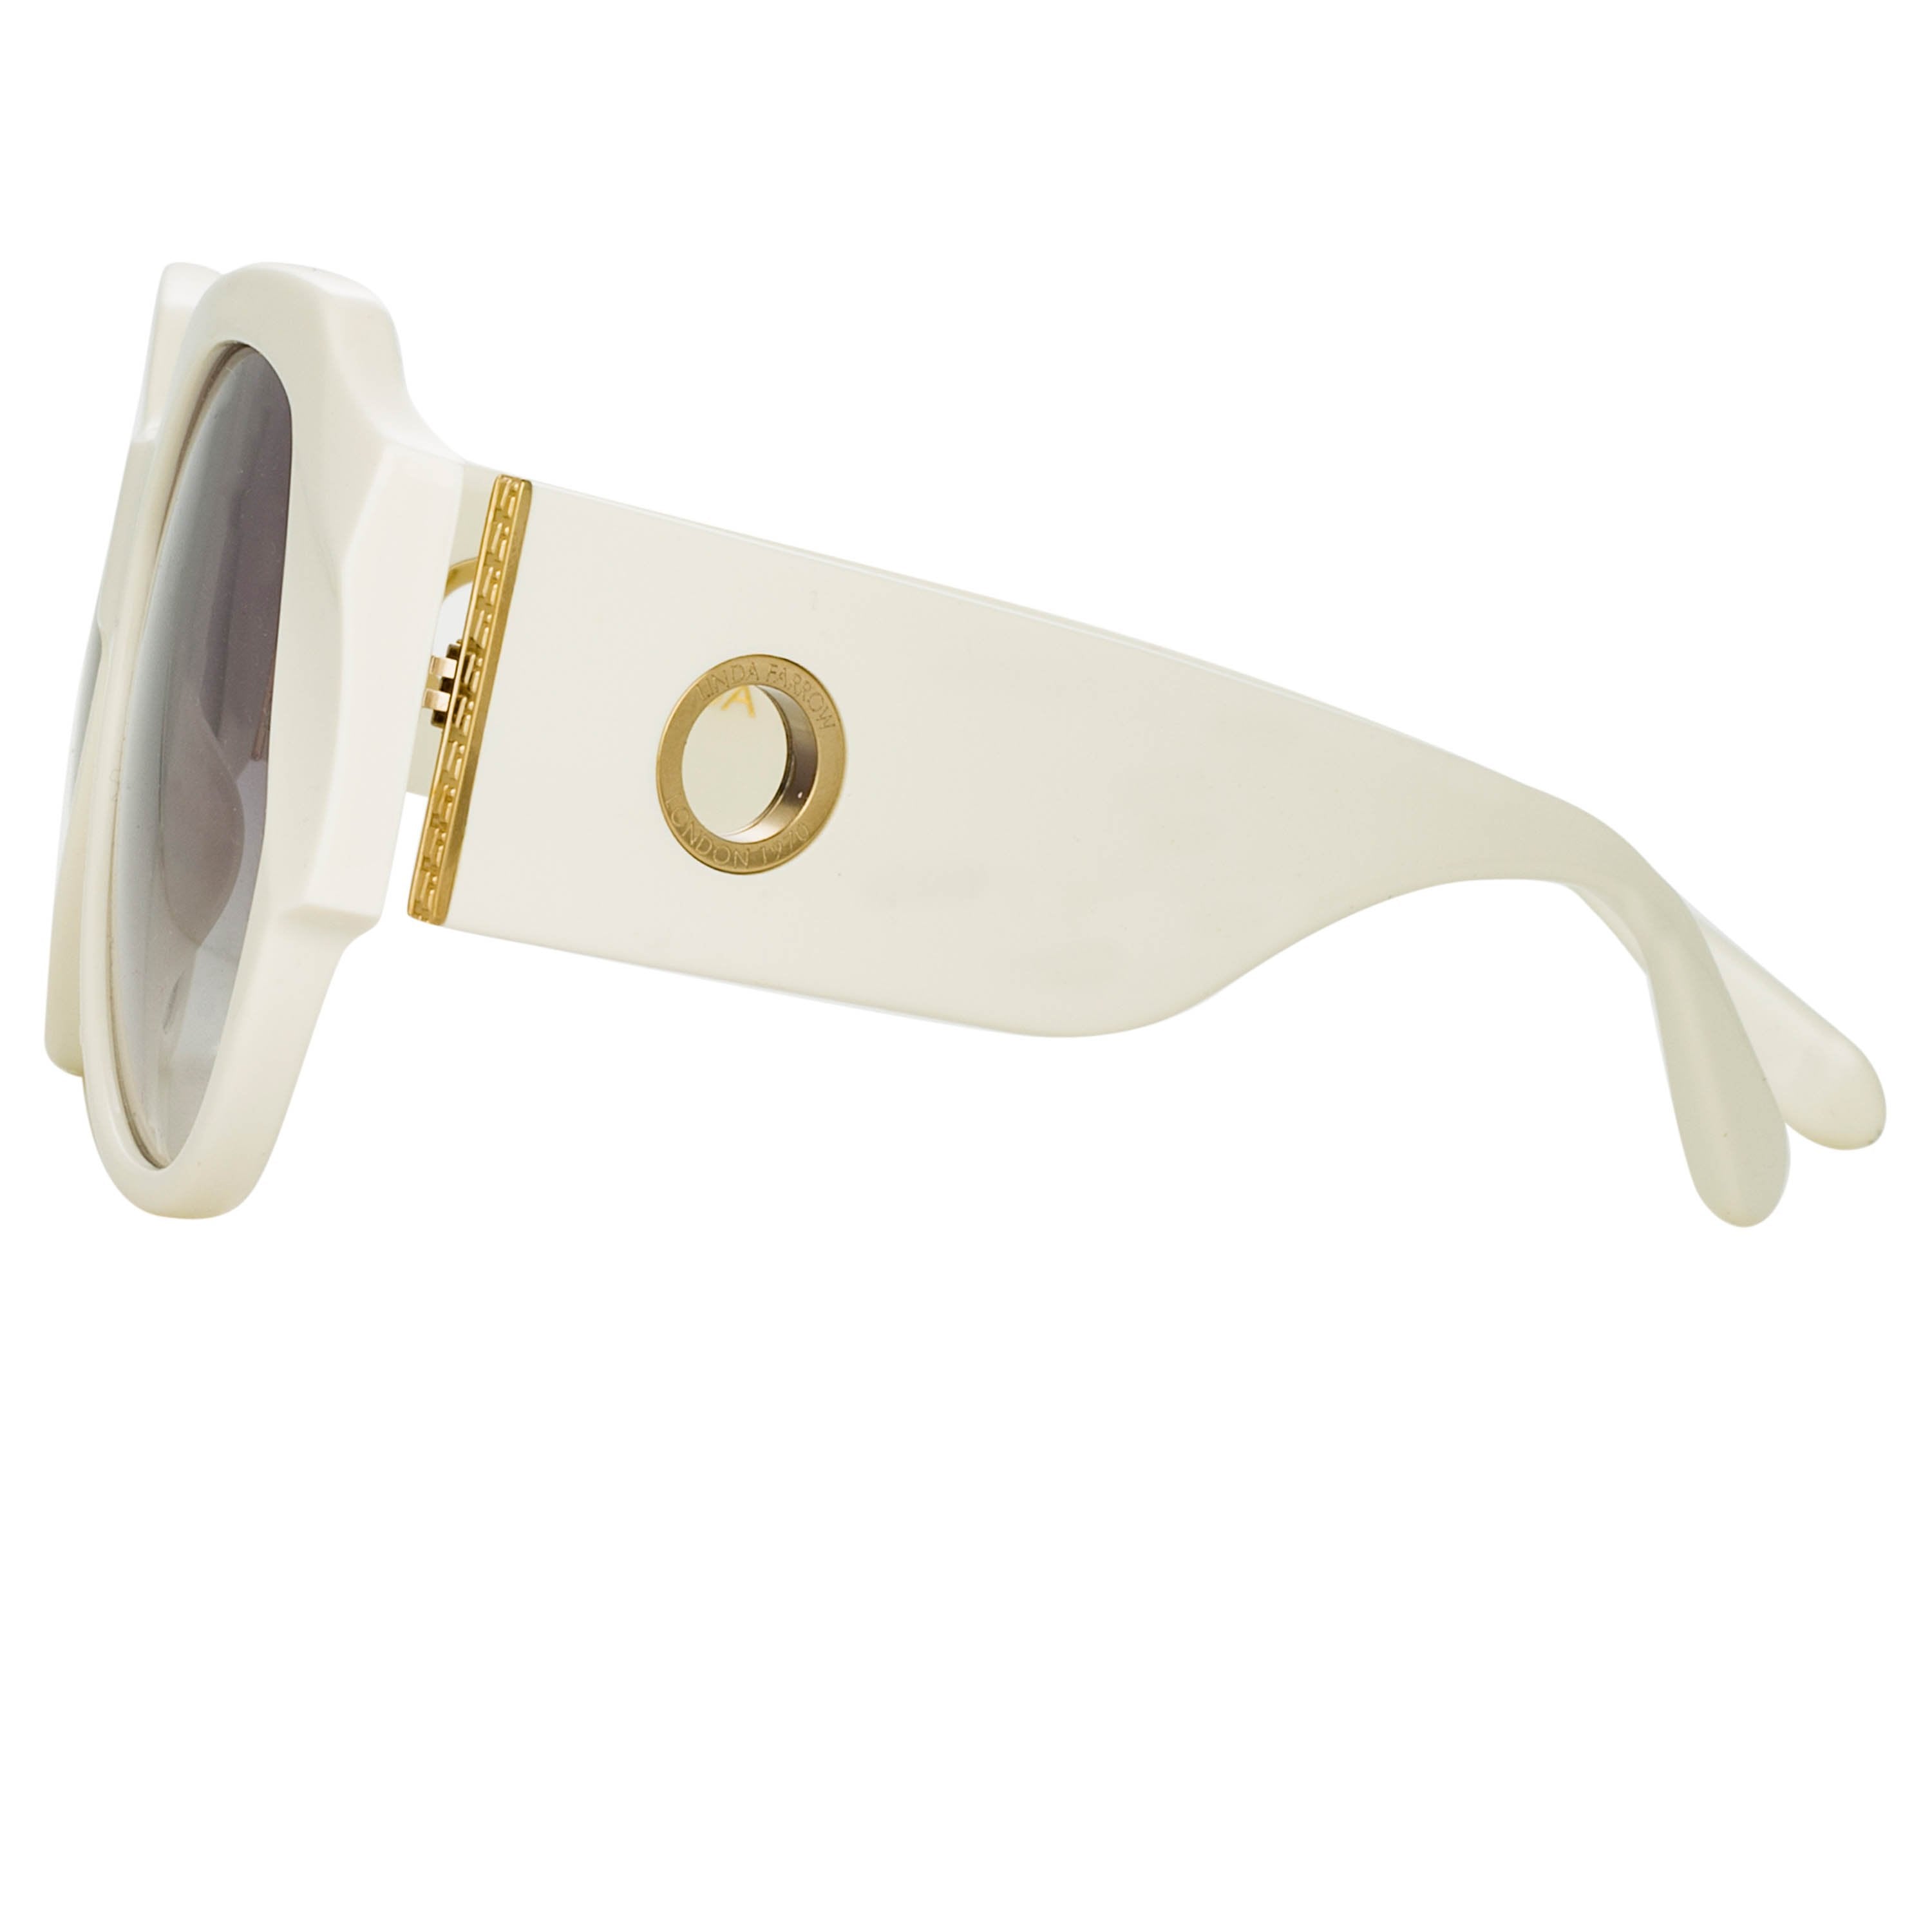 Color_LFL1073C5SUN - Christie Oversized Sunglasses in White